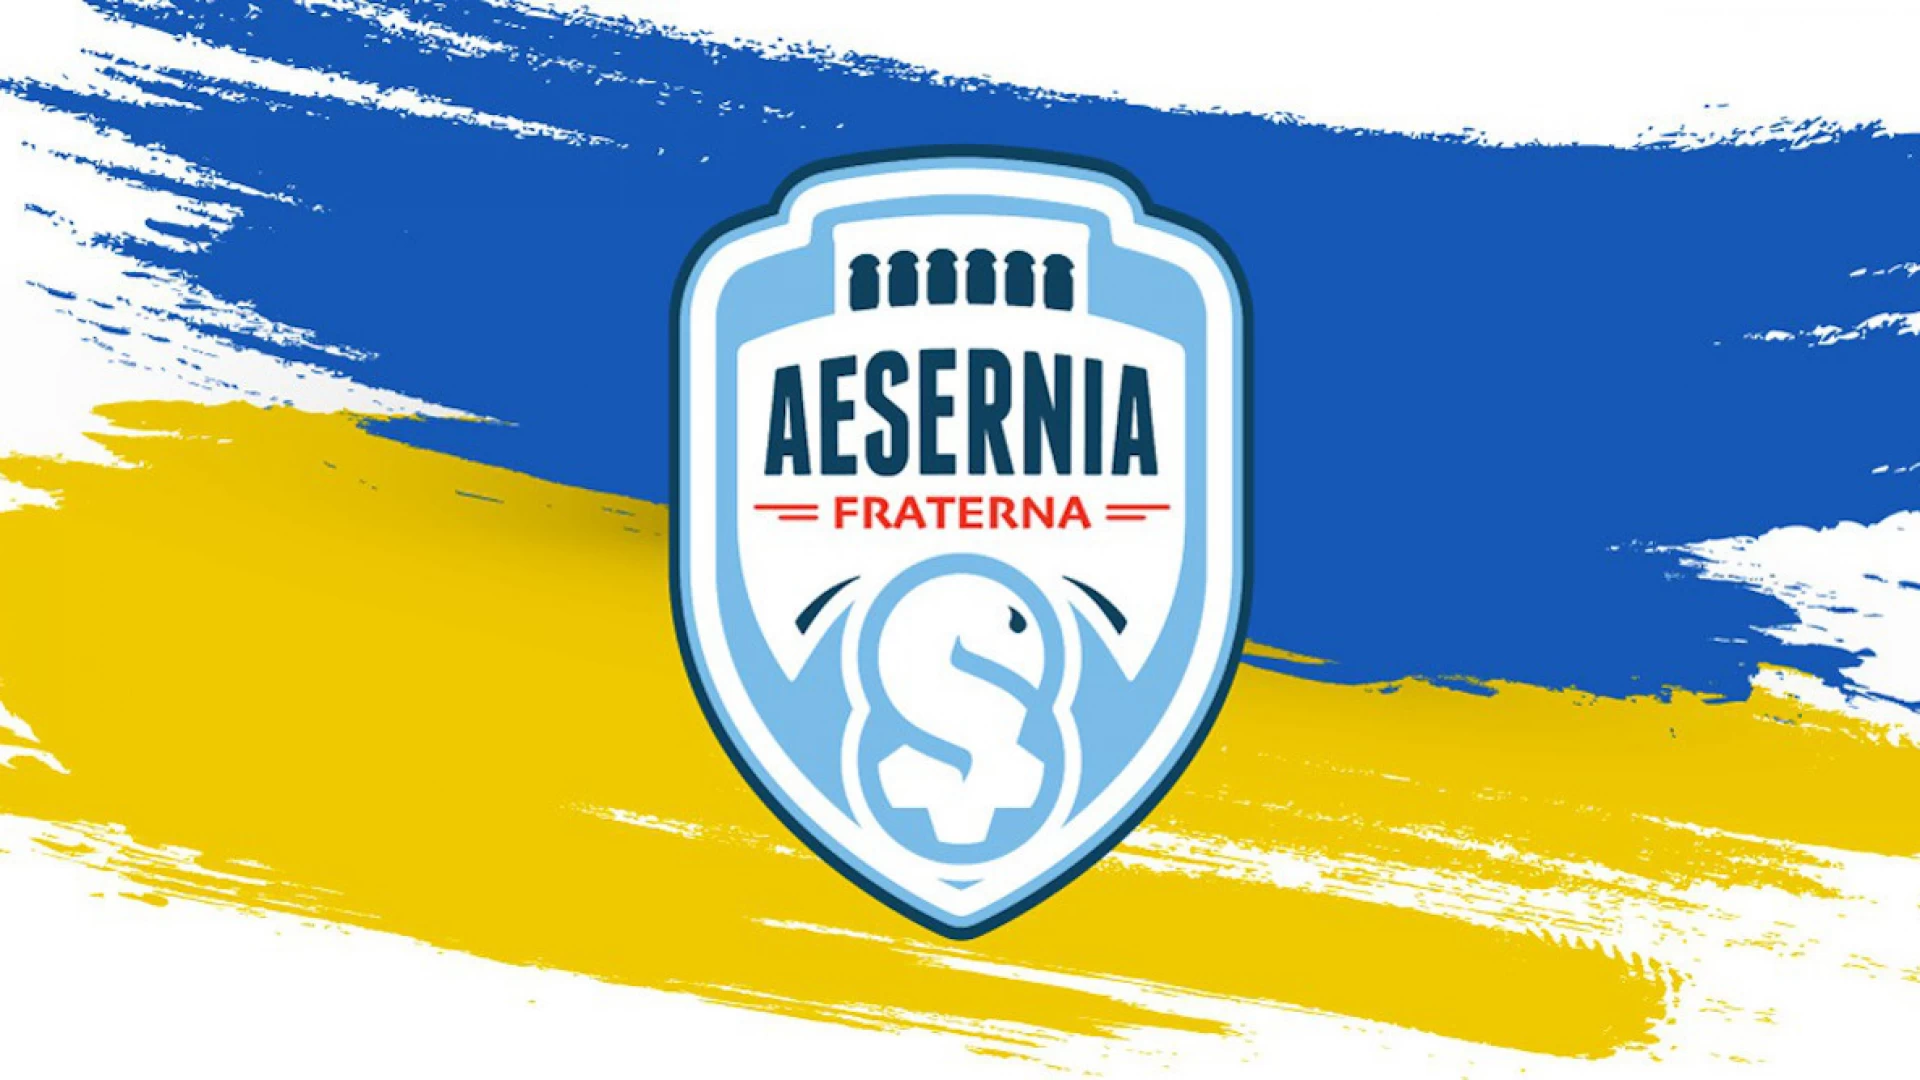 L’Aesernia Fraterna in campo per la solidarietà. Scuola calcio ed attività gratuite per tutti i bambini ucraini ospitati presso le famiglie di Isernia e centri limitrofi.